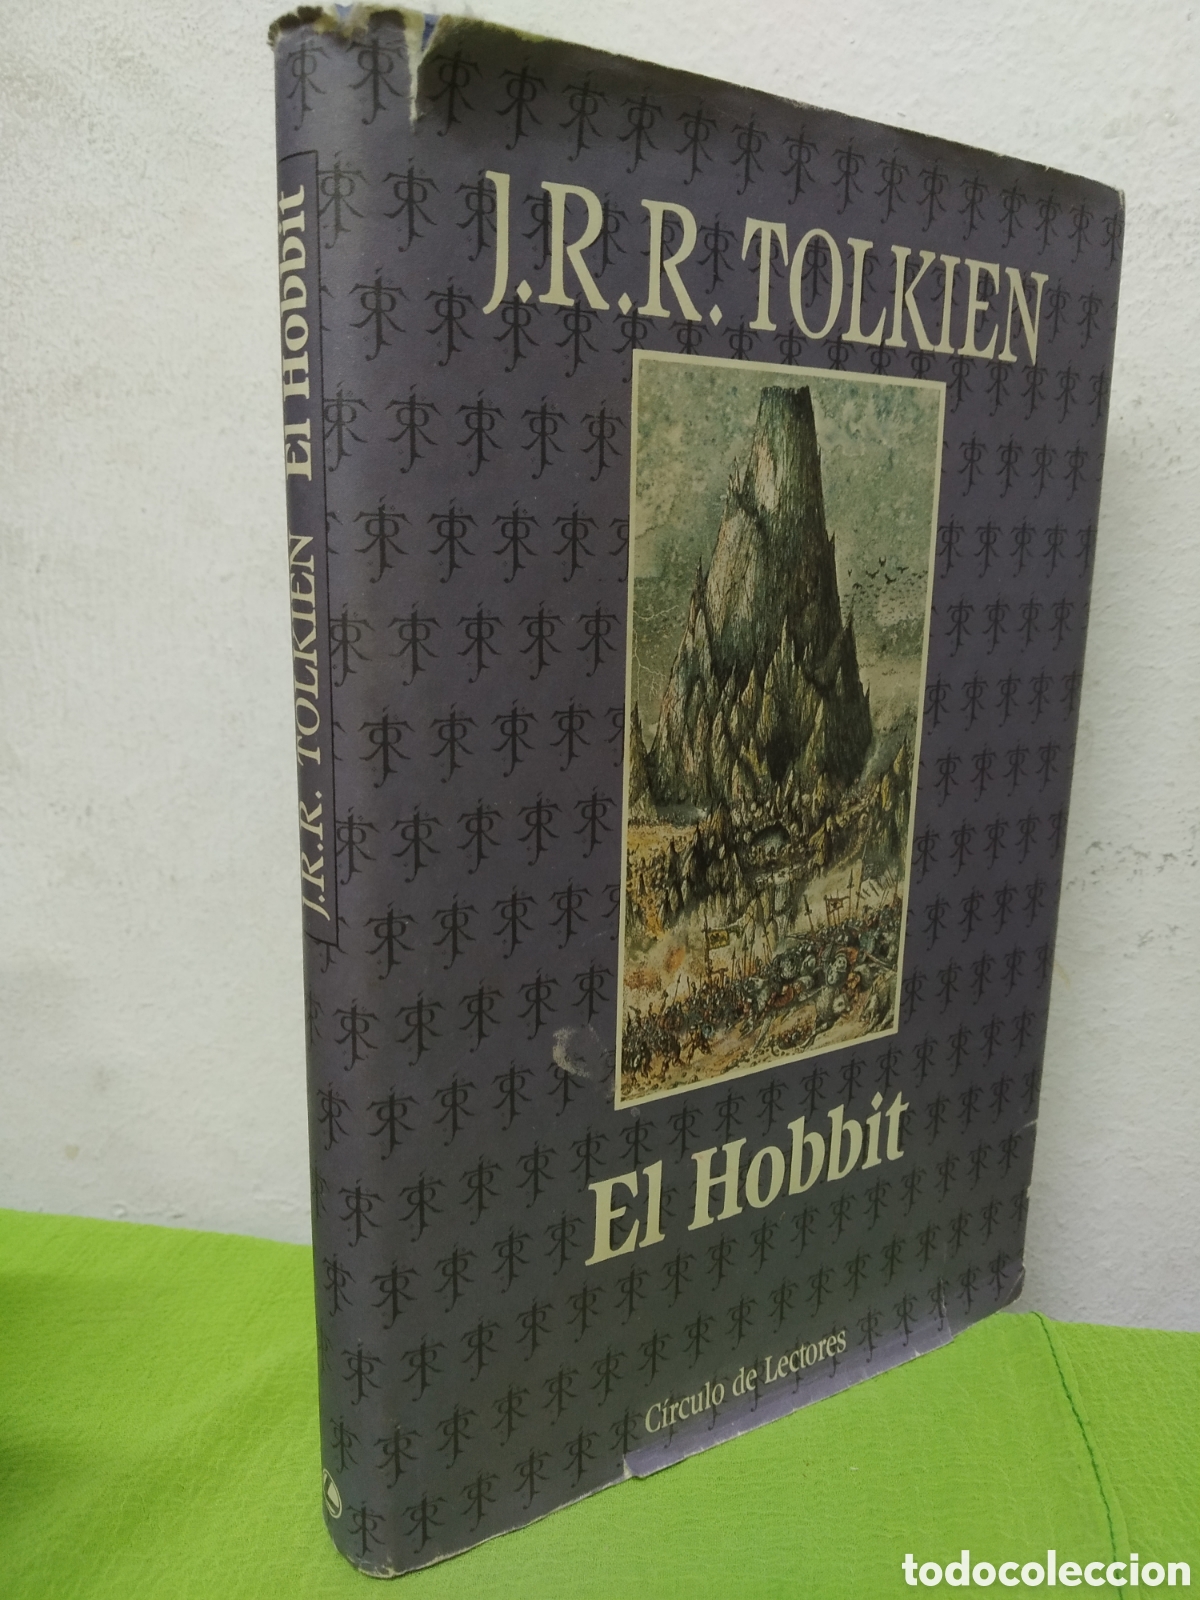 EL HOBBIT - J.R.R. TOLKIEN